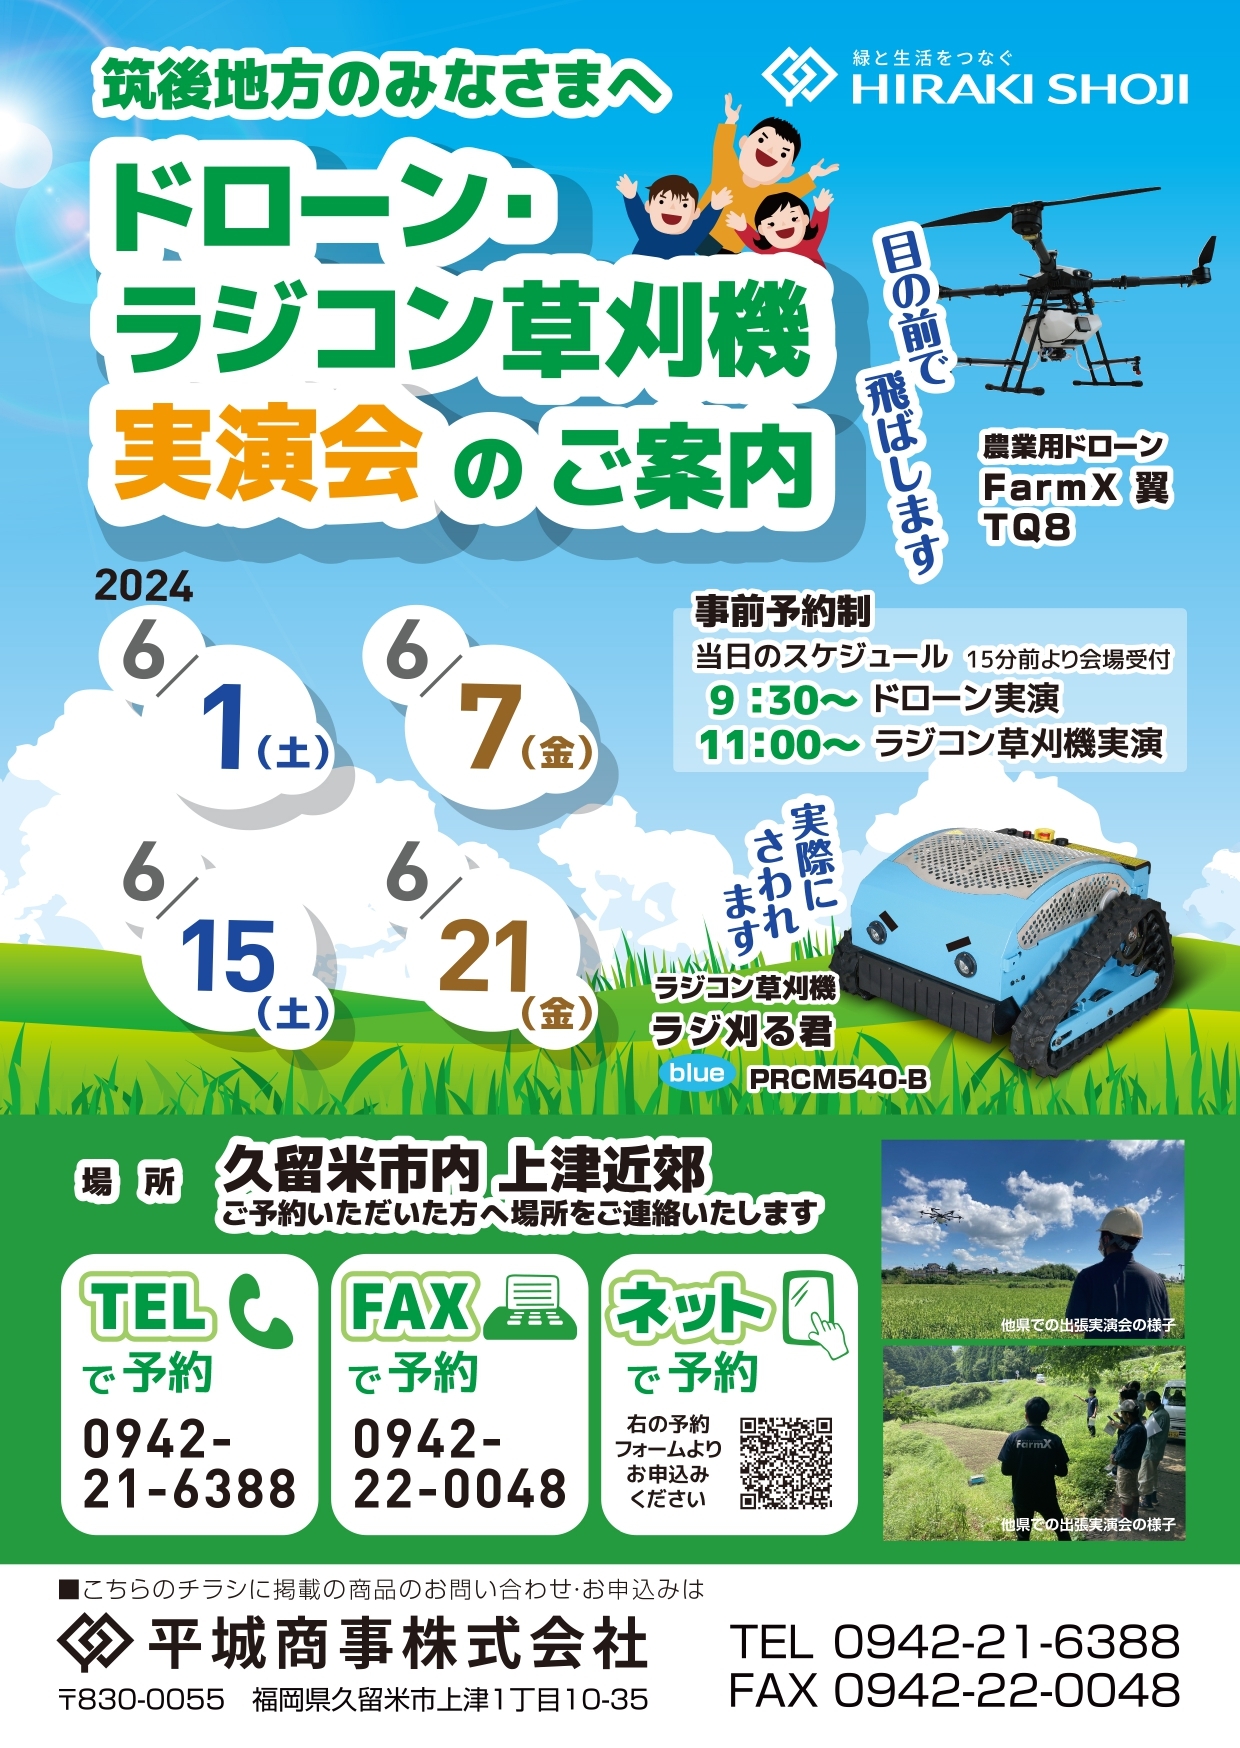 6月開催！ドローンとラジコン草刈機の実演会のご案内@鹿児島&熊本&福岡